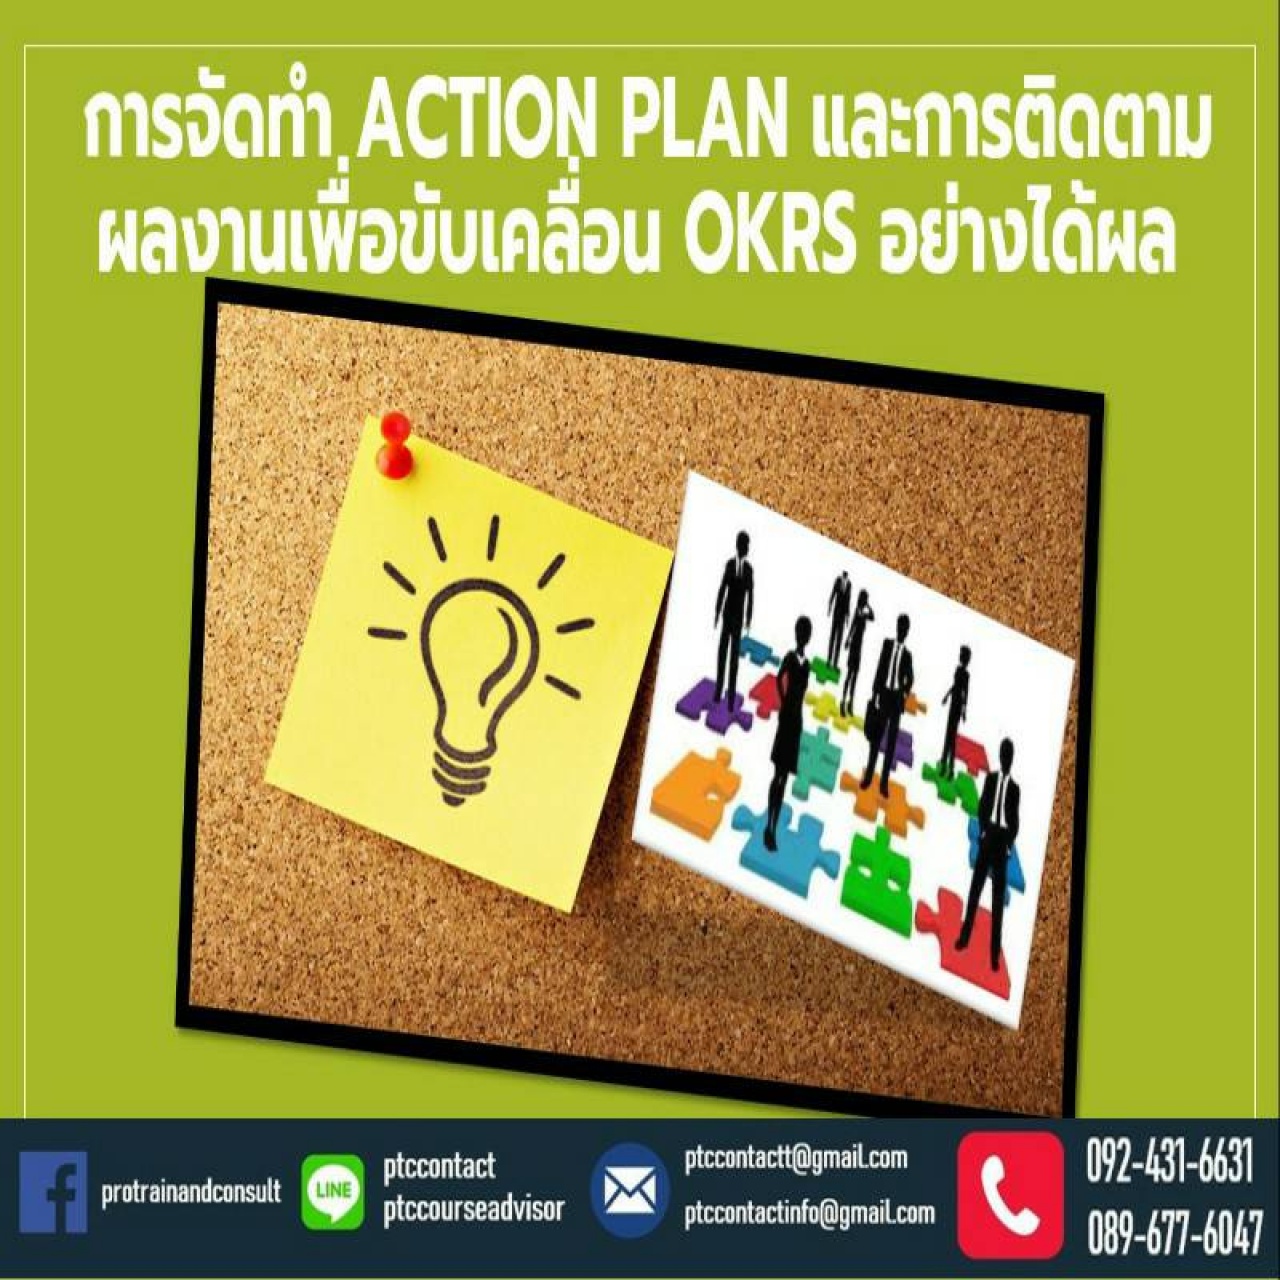 การจัดทำ Action Plan  และการติดตามผลงาน เพื่อขับเคลื่อน OKRs อย่างได้ผล 